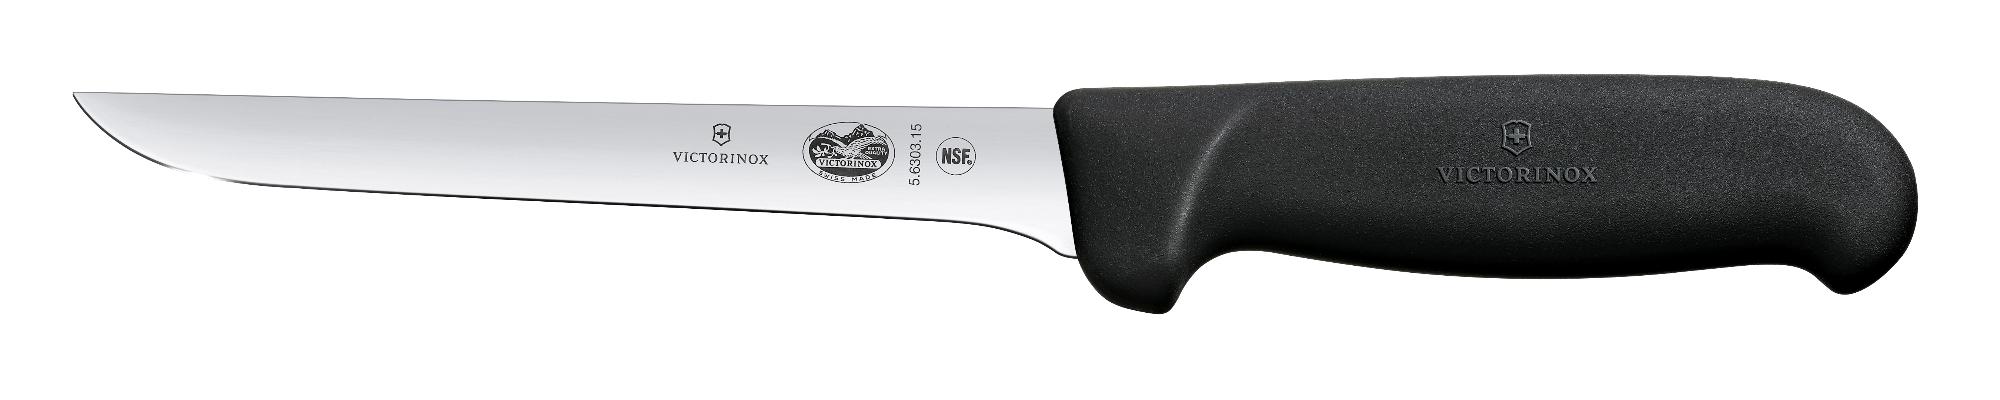 Fibrox deboning knife, stiff, 15 cm